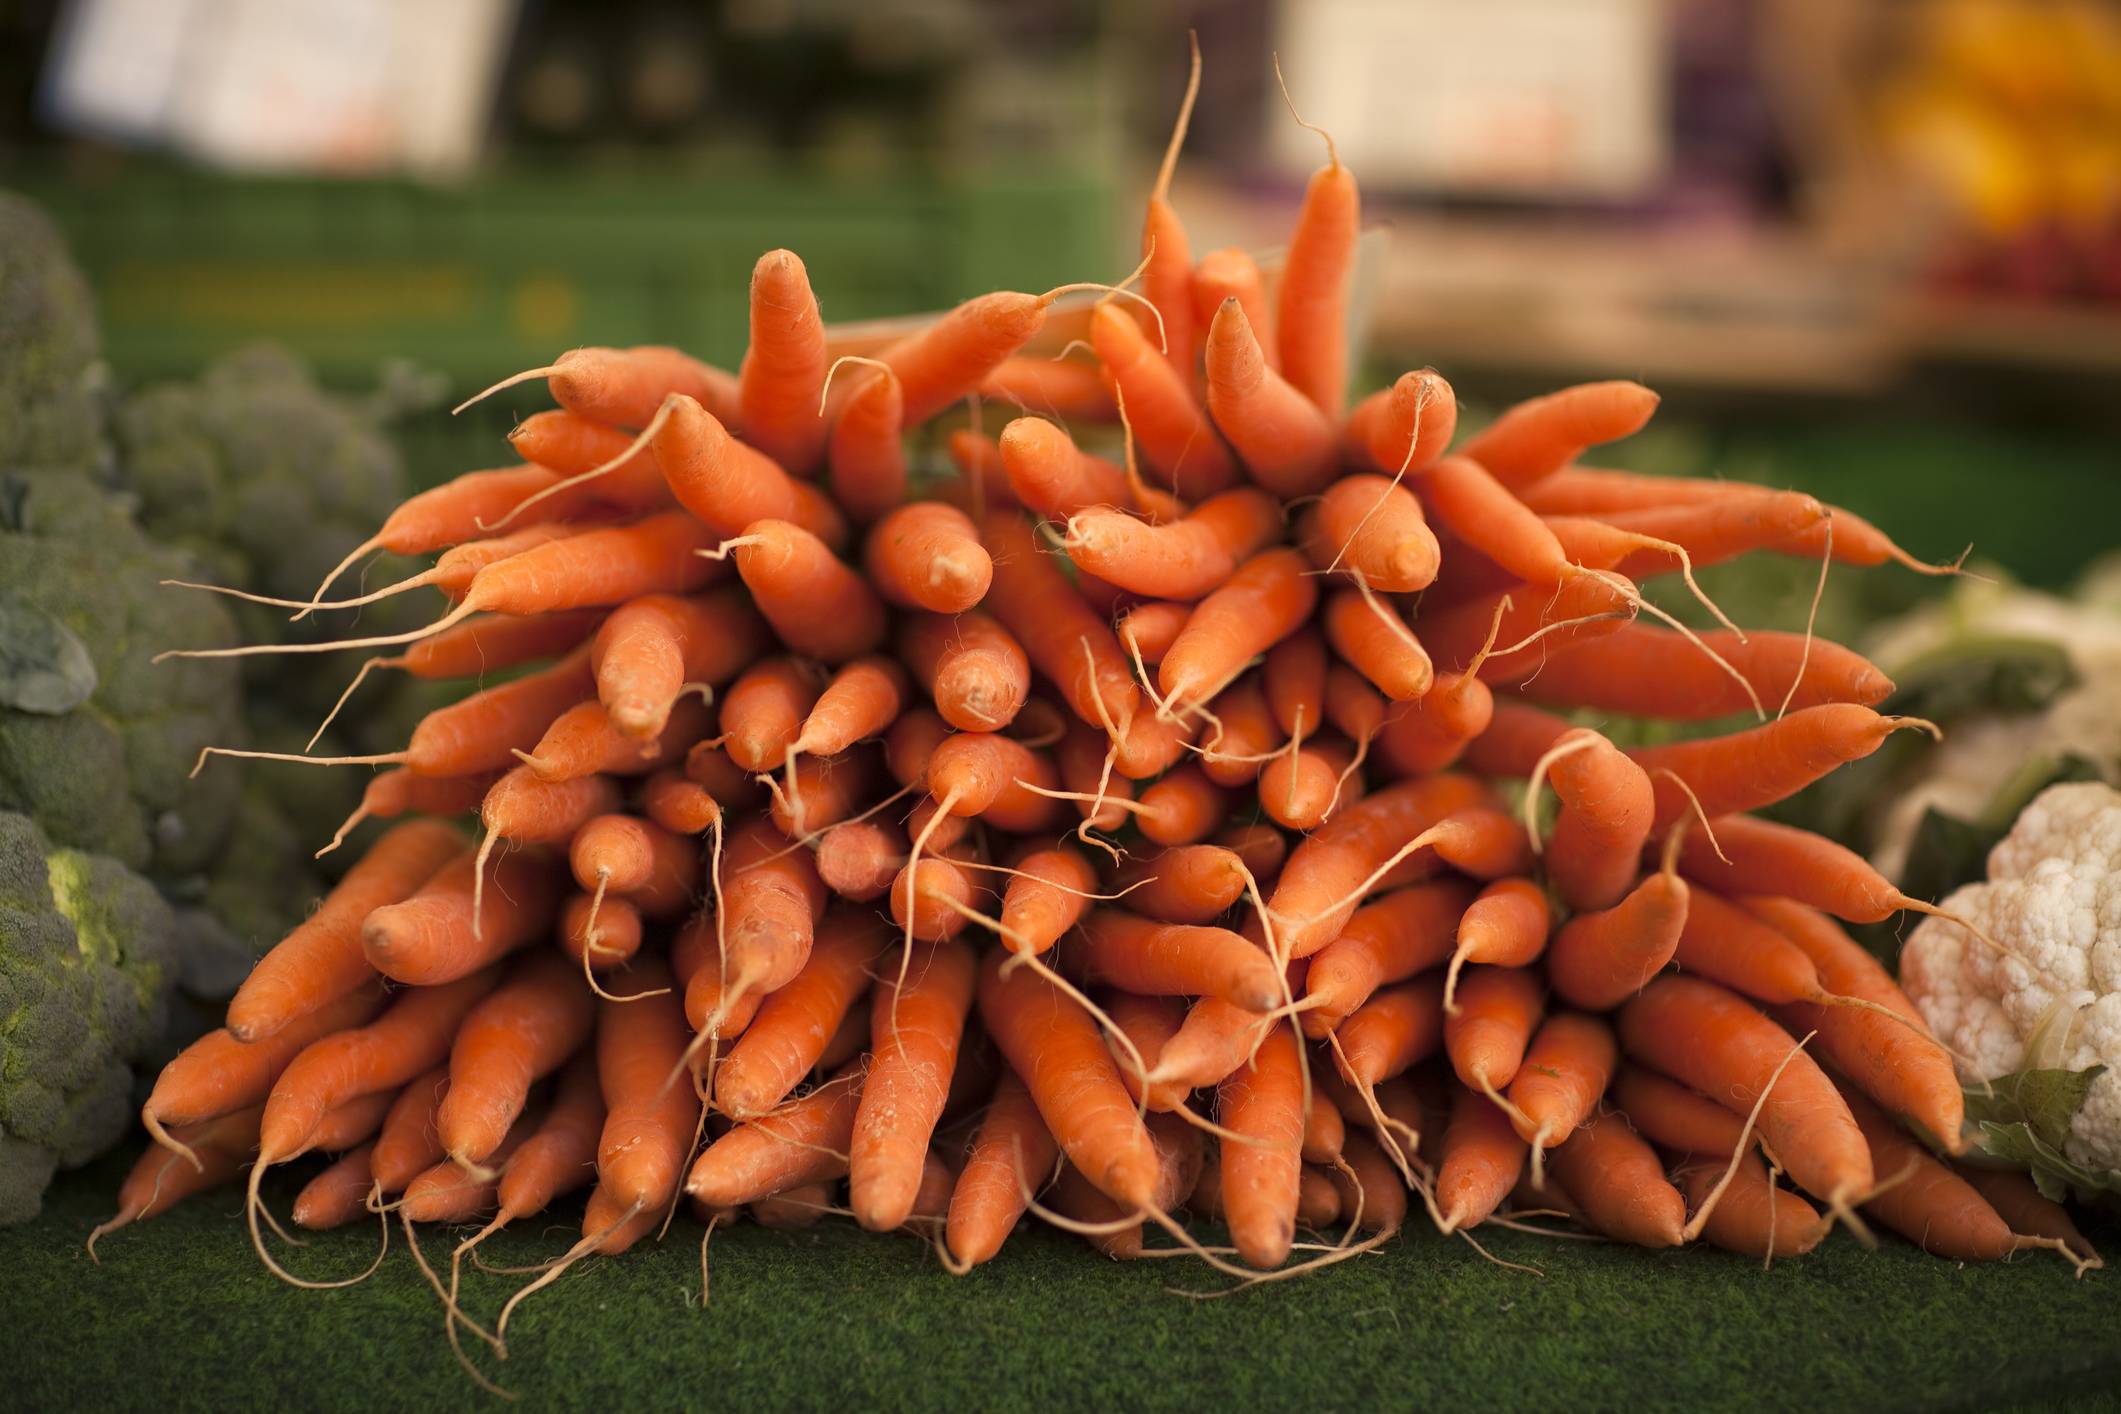 морковь лагуна описание сорта фото